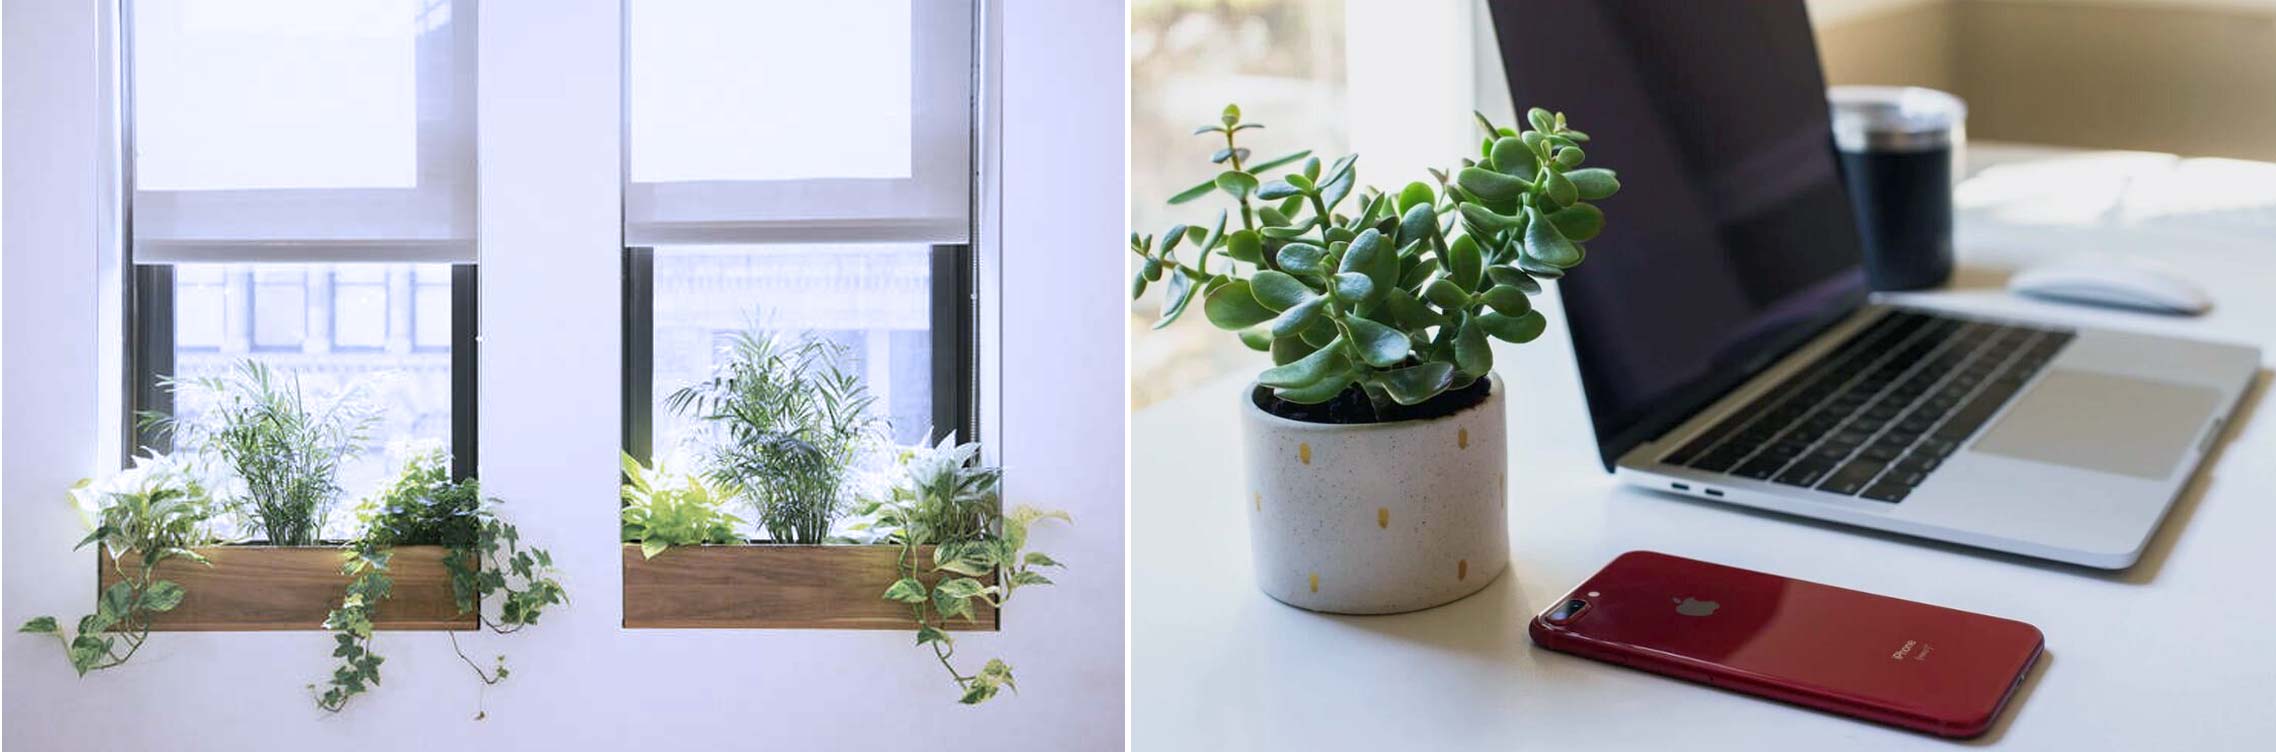 2- کاربرد و استفاده - گیاهان آپارتمانی - indoor plants - office plants - تجهیزات دکوراسیون - استفاده از گیاهان آپارتمانی - کاربرد گیاهان آپارتمانی